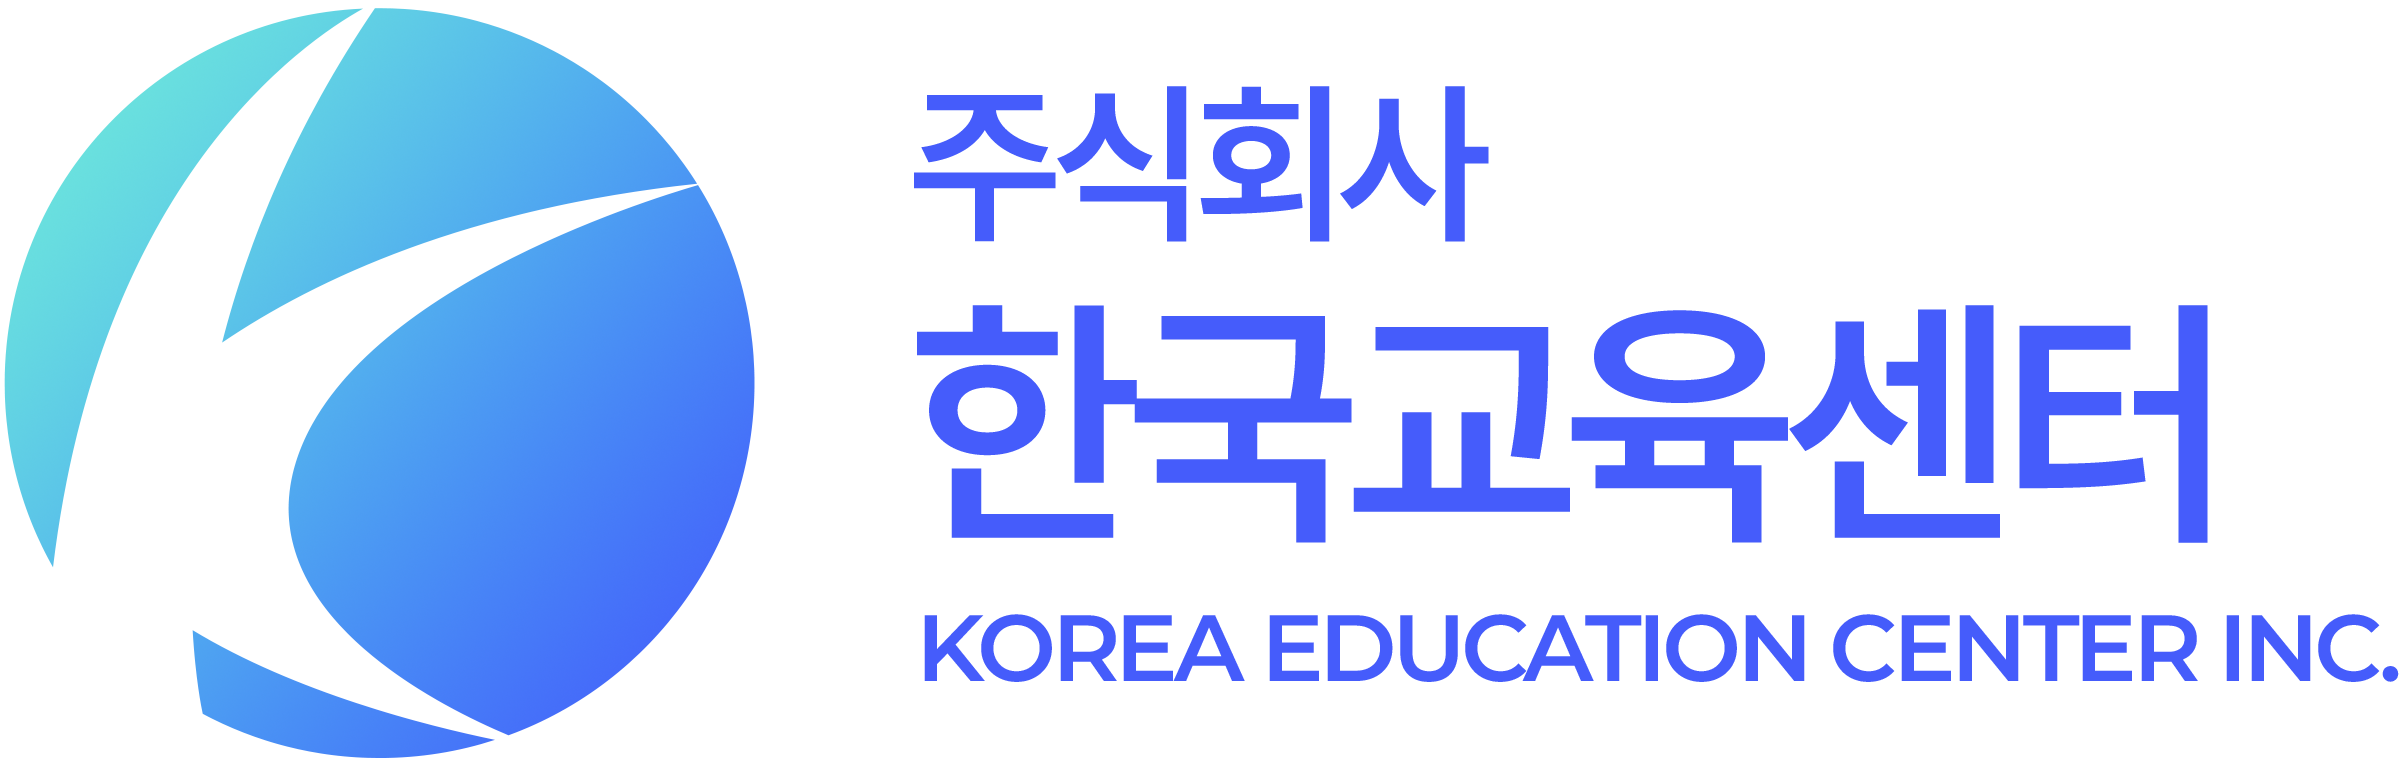 (주)한국교육센터의 기업로고